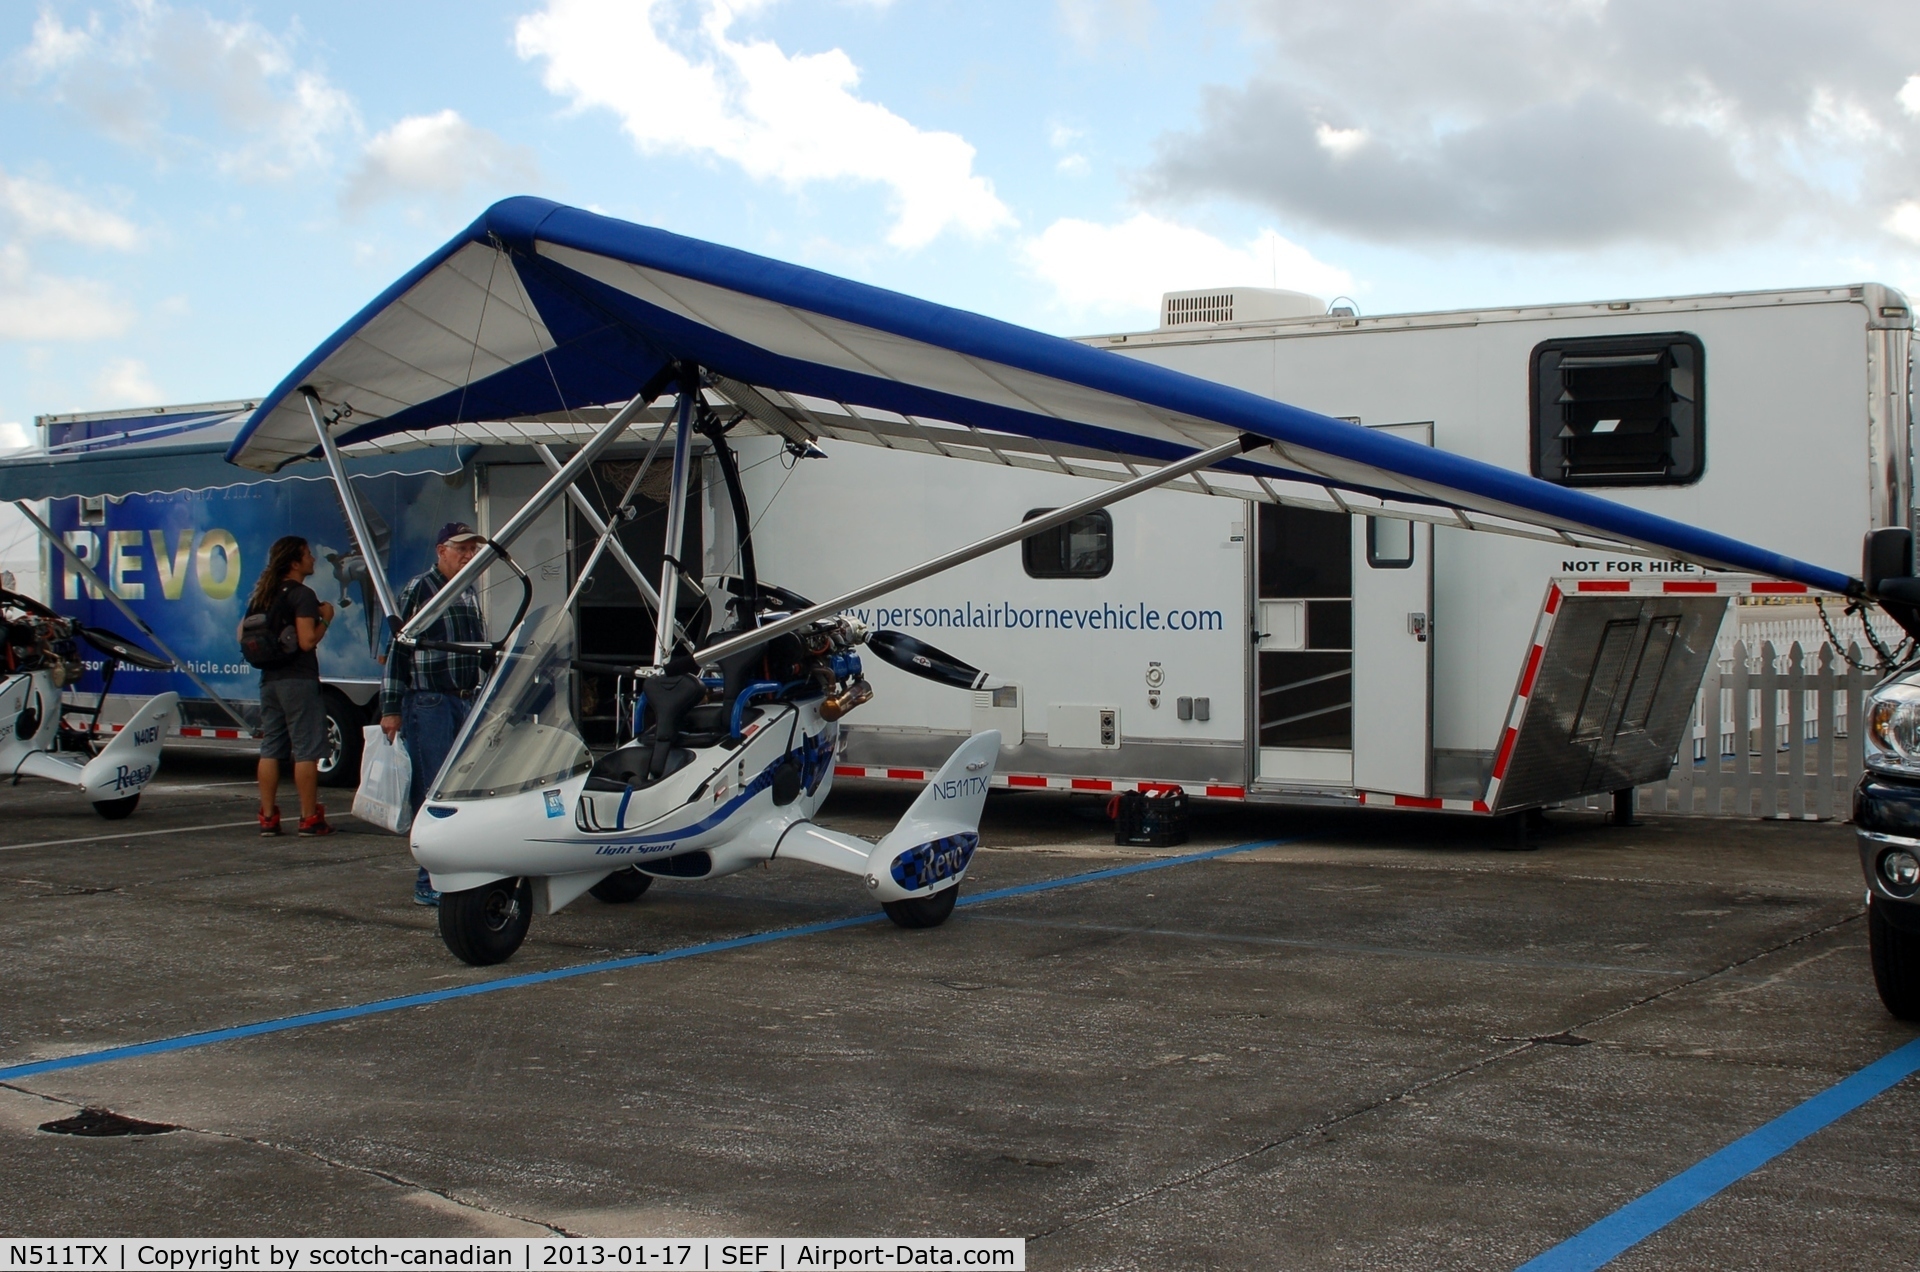 N511TX, Evolution Trikes Revo C/N 000553, Evolution Trikes REVO, N511TX, at the US Sport Aviation Expo, Sebring Regional Airport, Sebring, FL